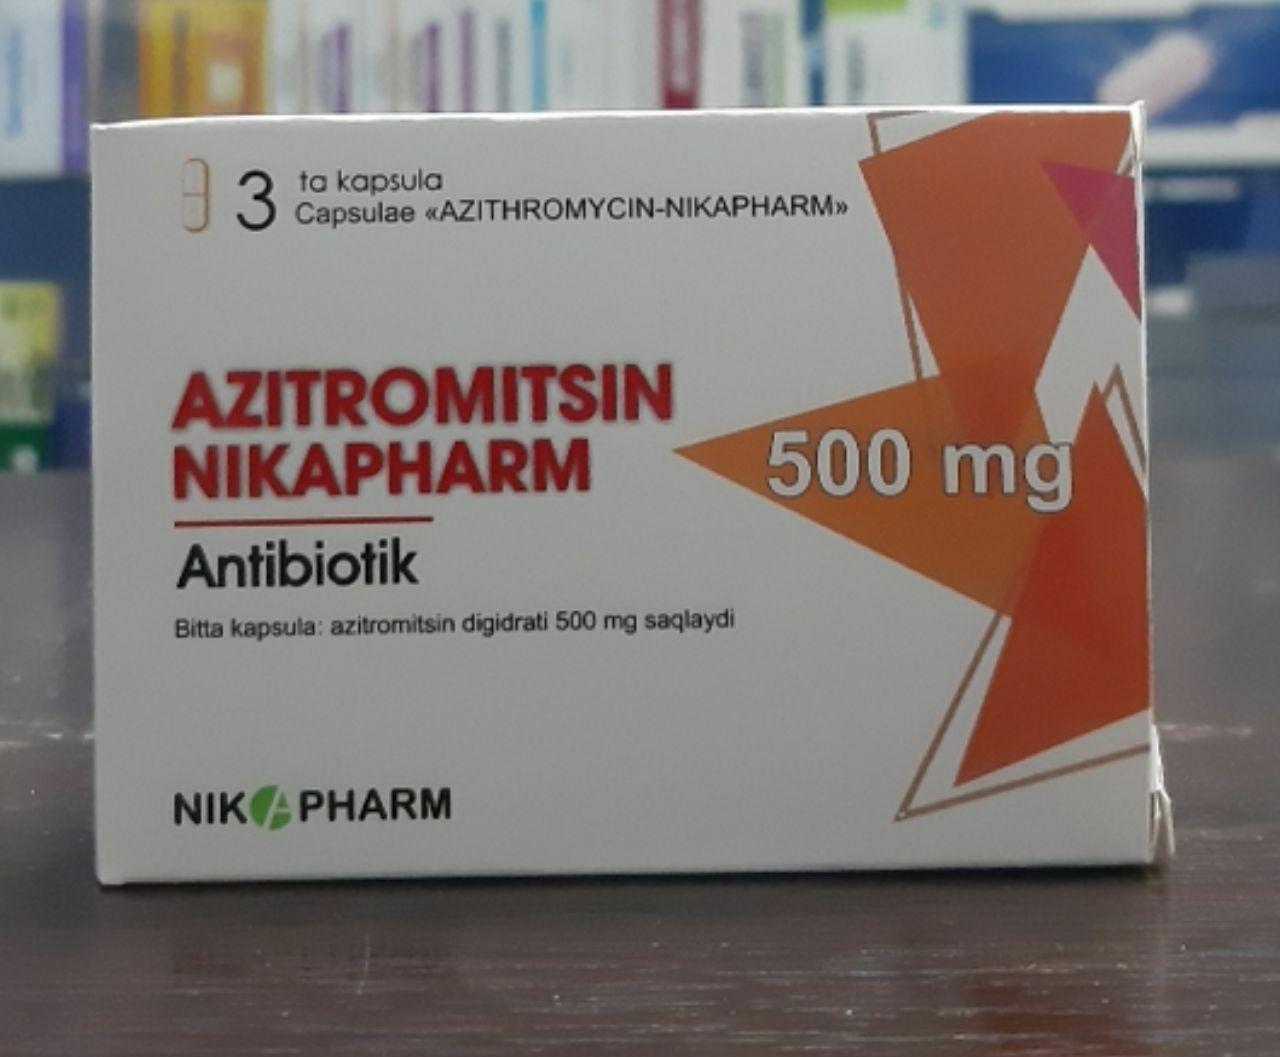 Azitromitsin analoglari